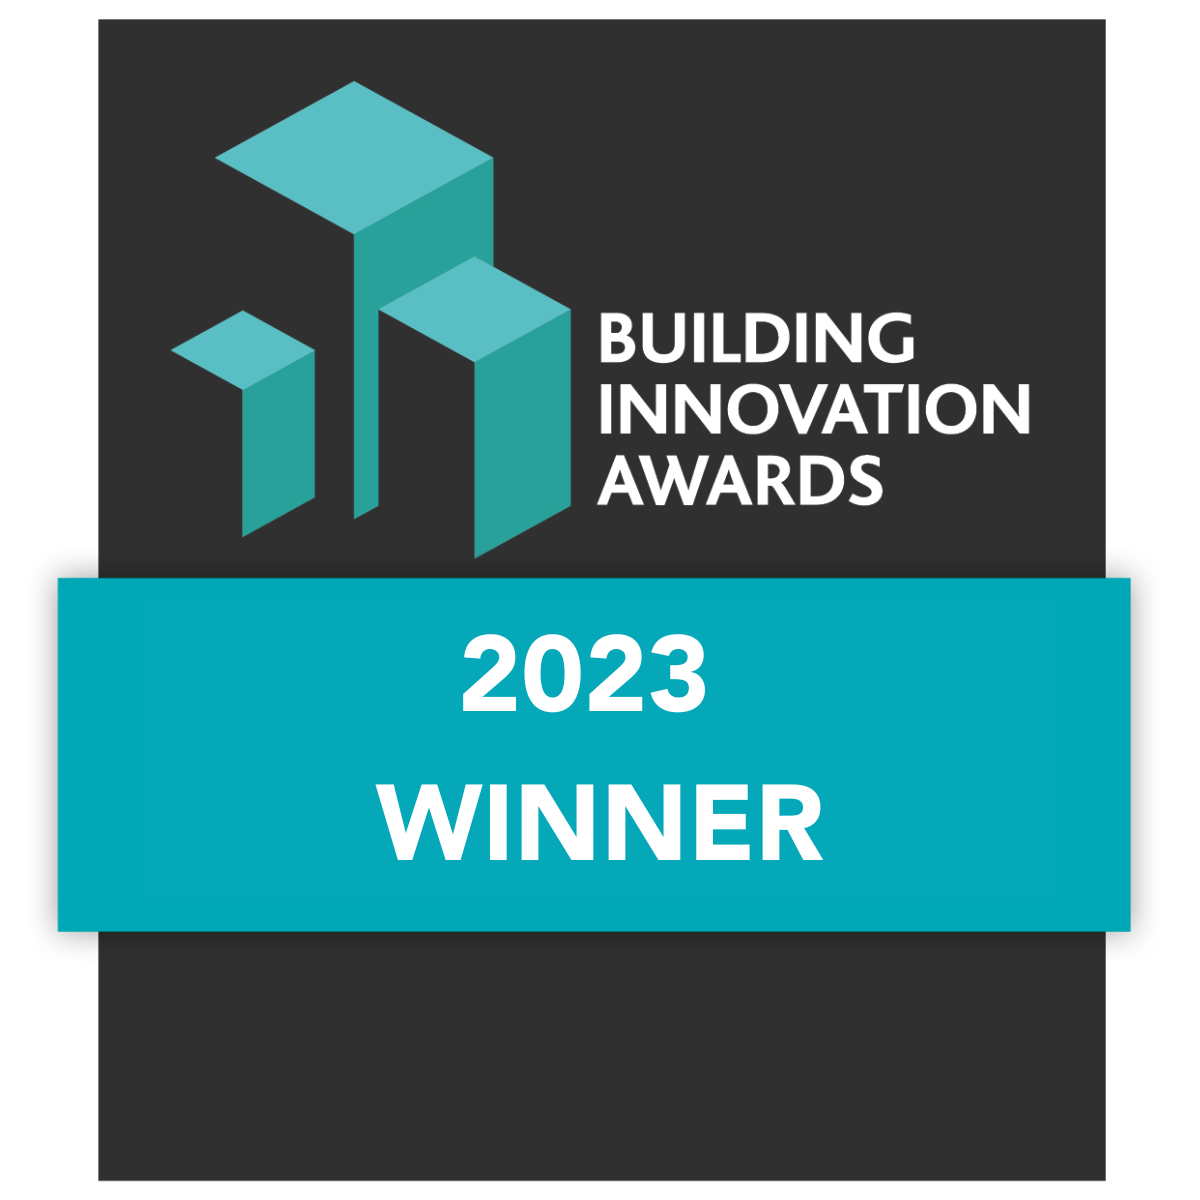 Building Innovation Awards Winner